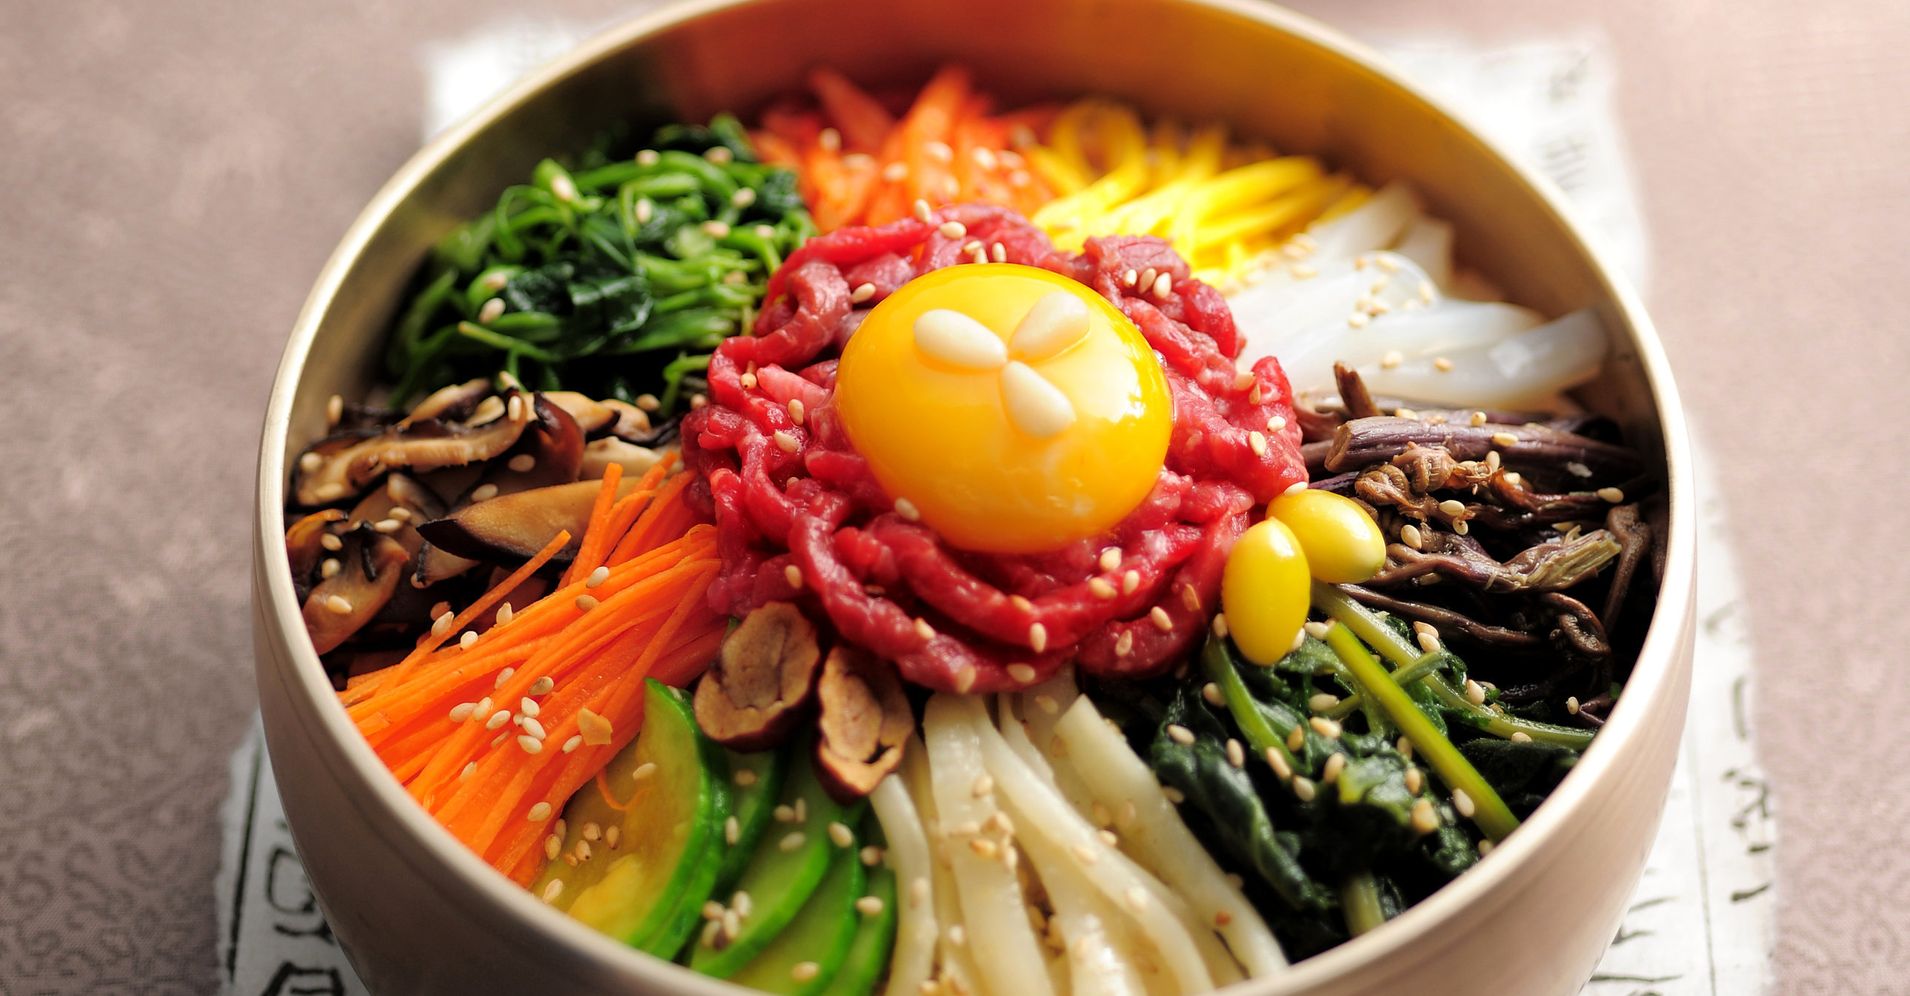 전주비빔밥